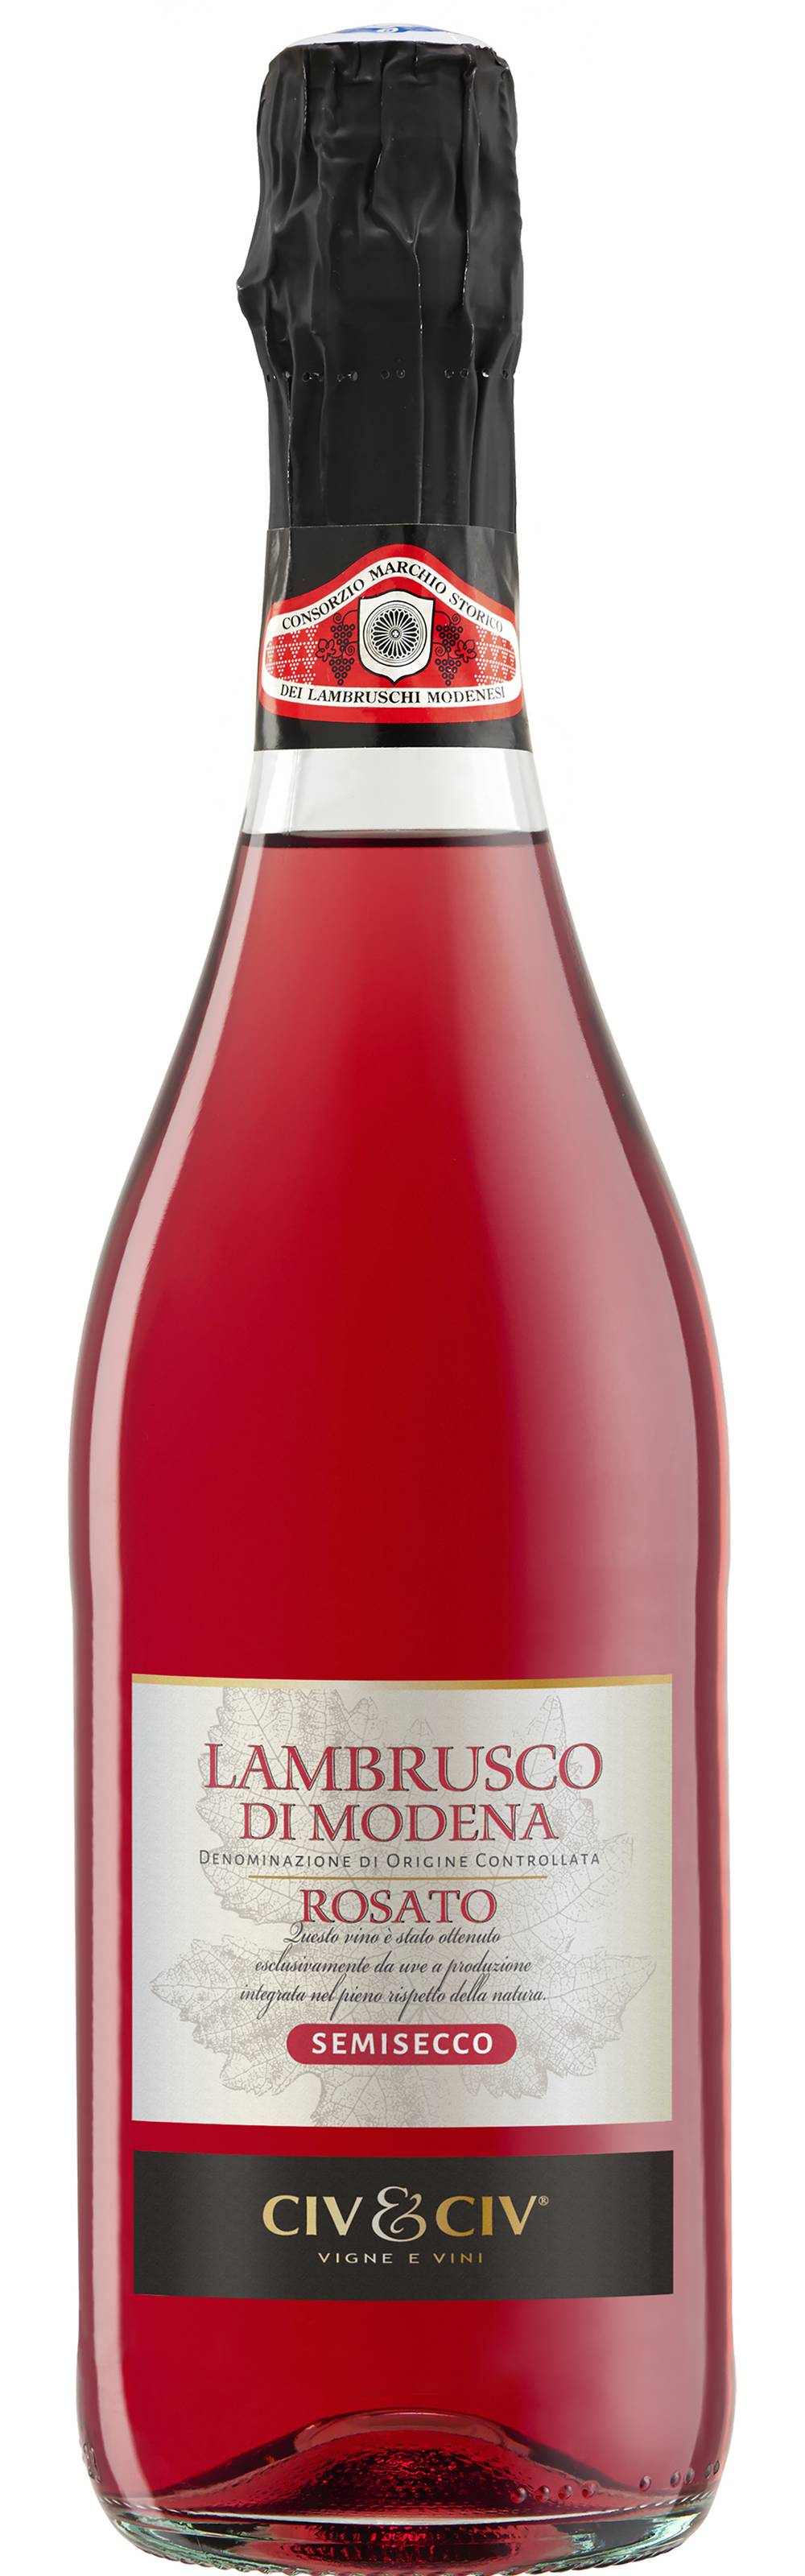 Civ et Civ - Vin pétillant rosé lambrusco doc Italie (750 ml)